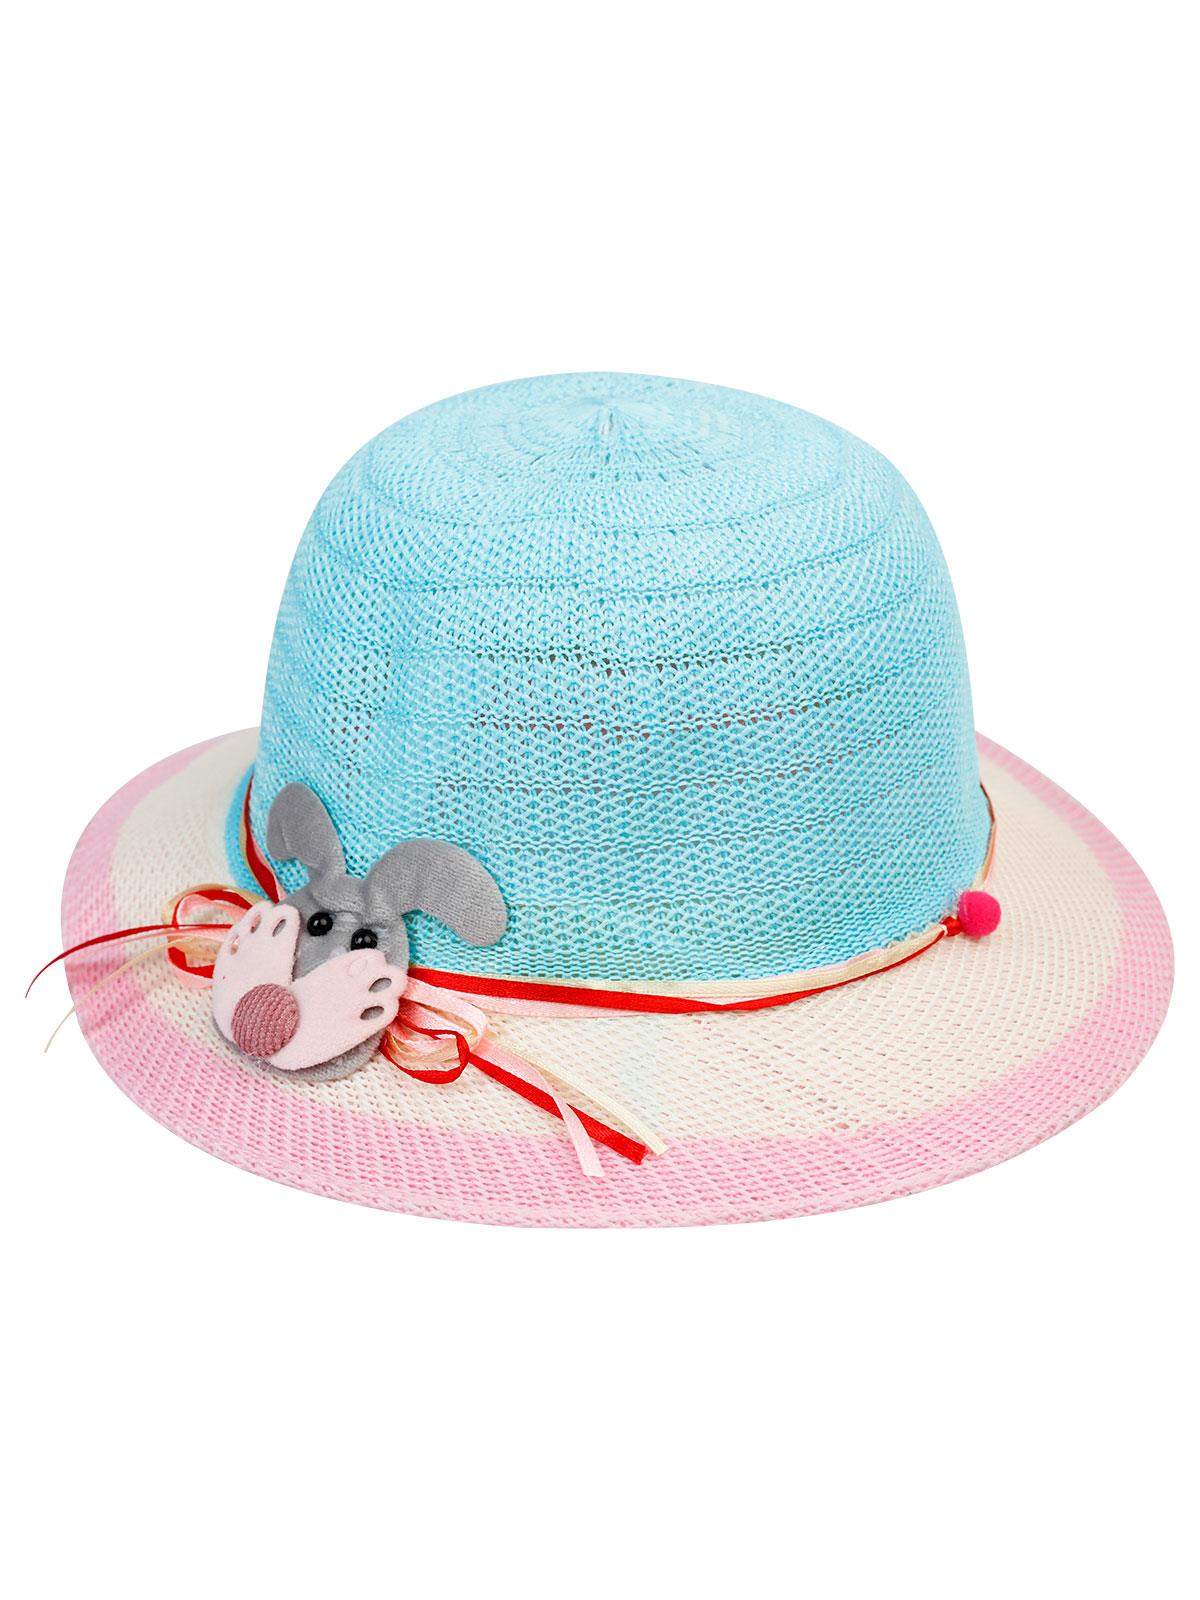 Kitti Kız Çocuk Hasır Şapka 6-12 Yaş Mavi